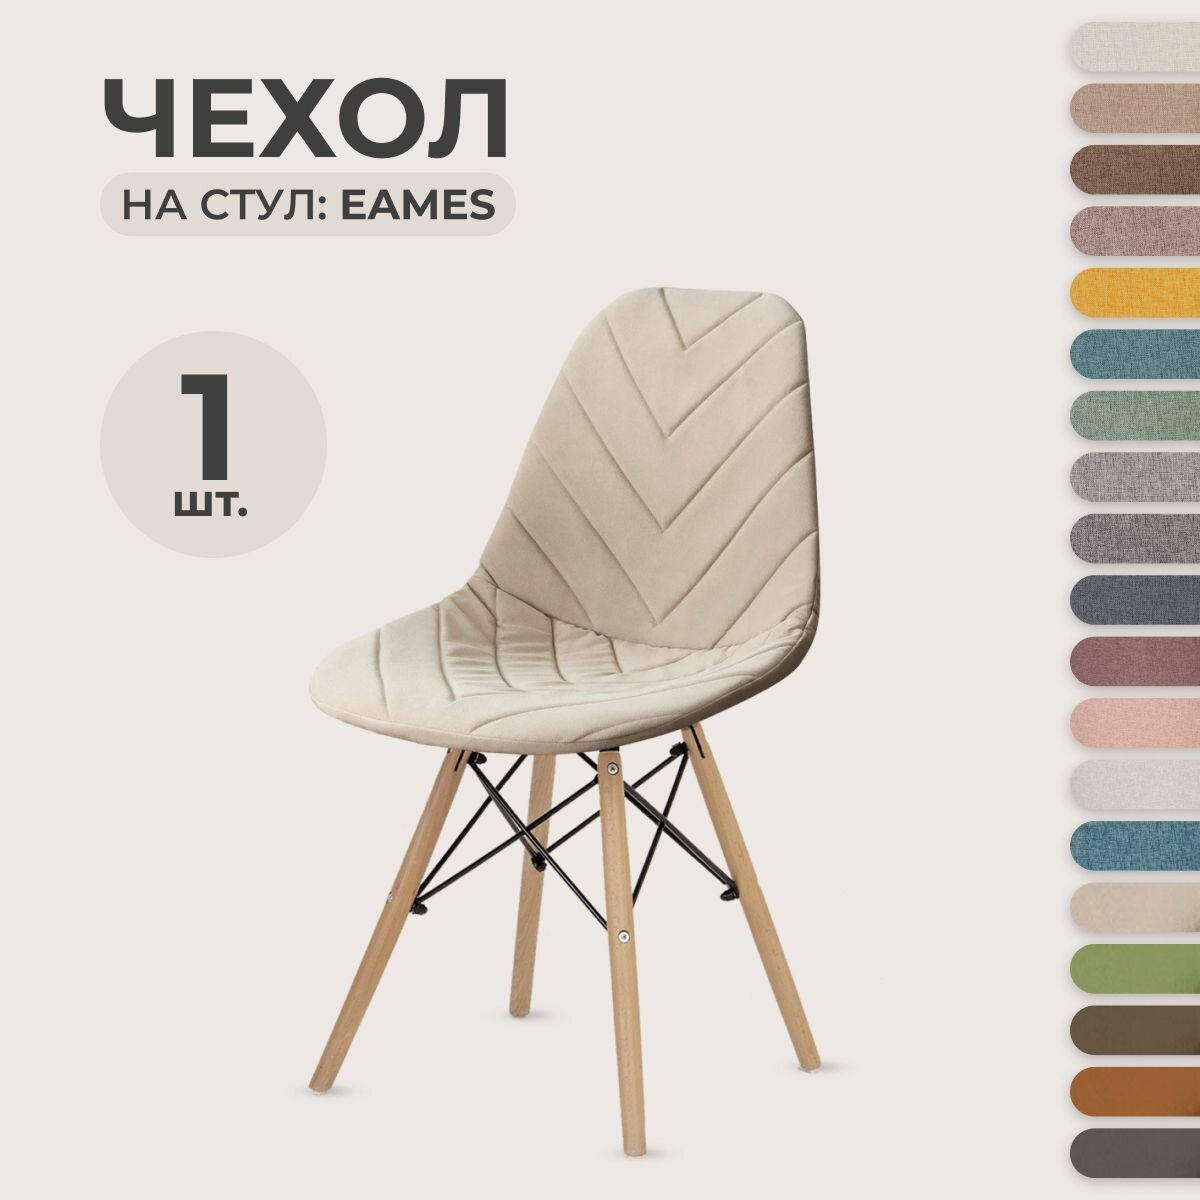 Чехол для стула LuxAlto в стиле Eames, ткань Велюр с прострочкой Светло-бежевый, 1 шт.